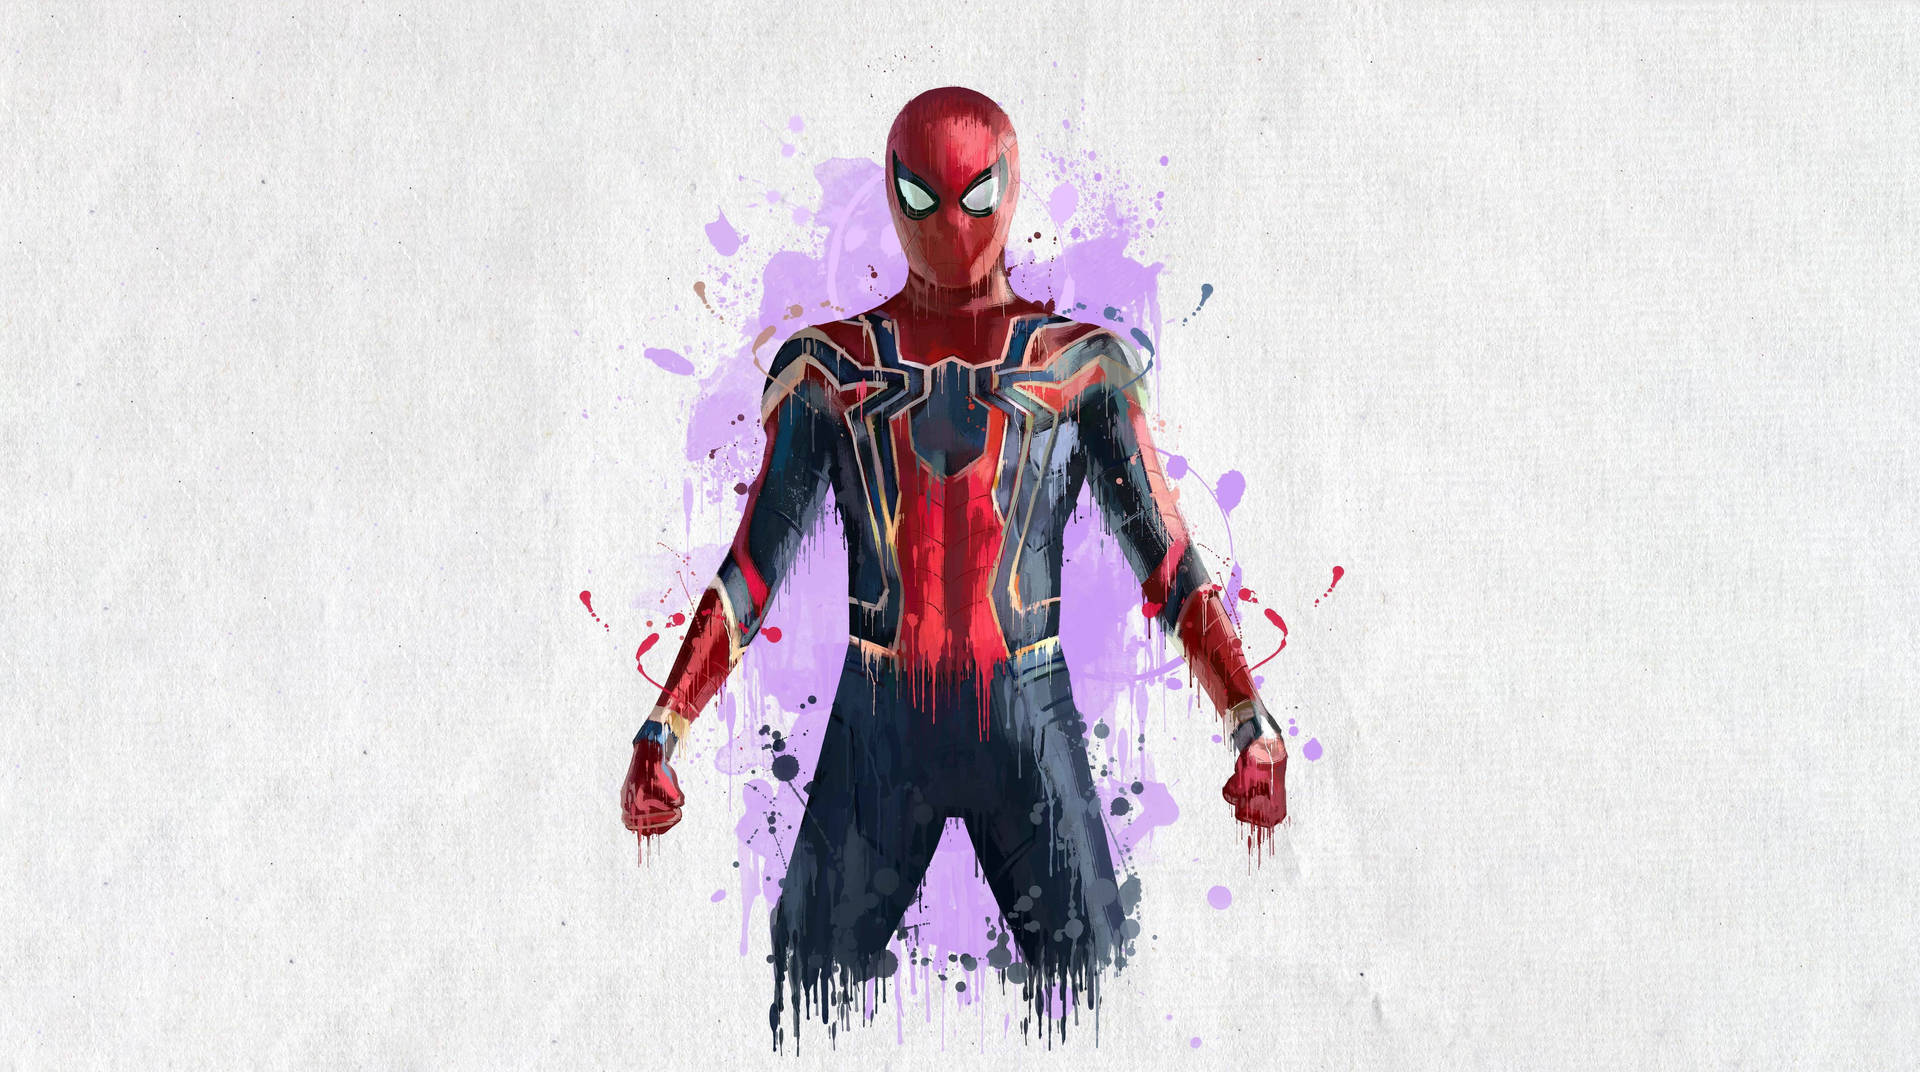 Marvelavengers Iron Spider: Marvel Avengers Eisen-spinne Wallpaper